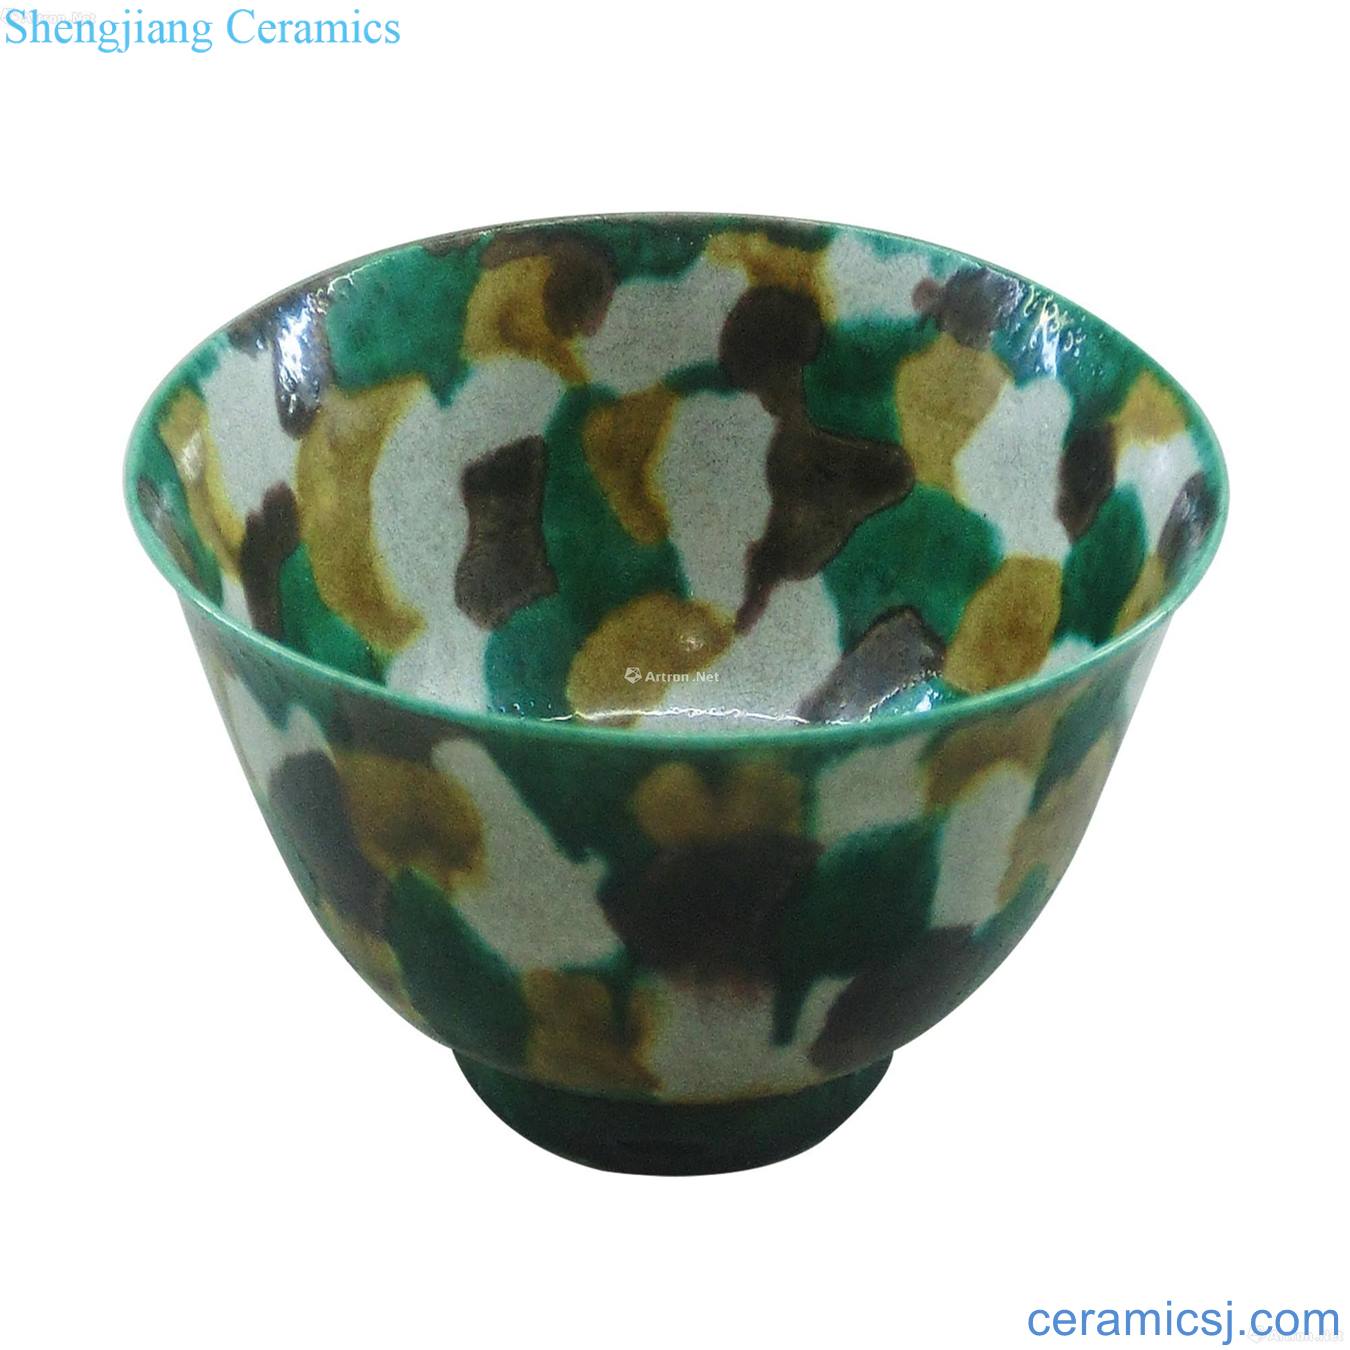 Plain tricolour tabby glaze bowls